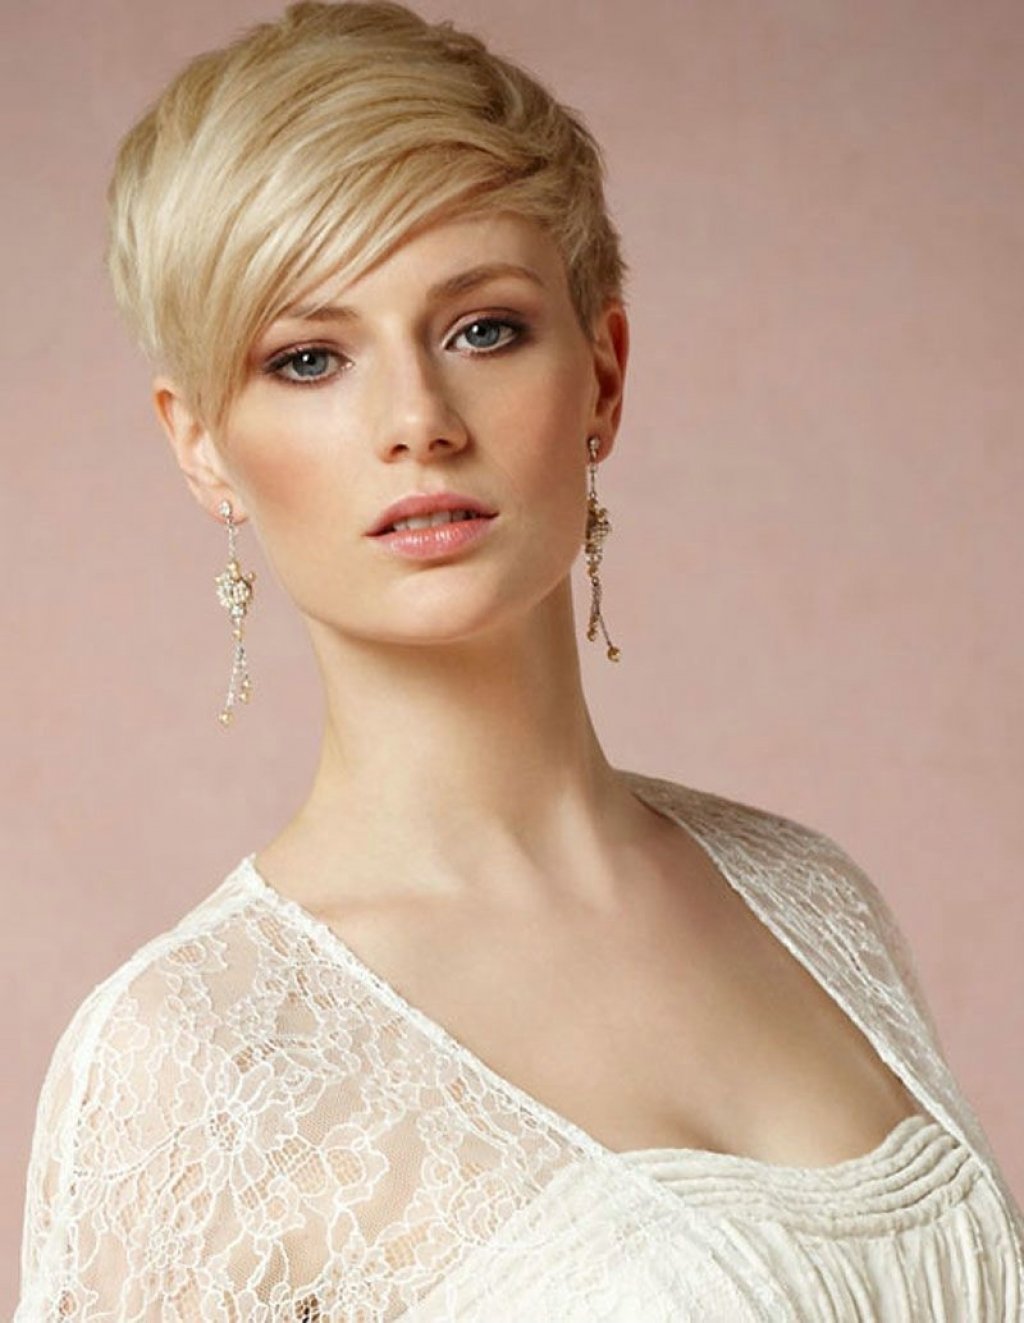 Стрижка пикси на короткие волосы − 10 элегантных и модных вариантов стрижек для женщин, фото